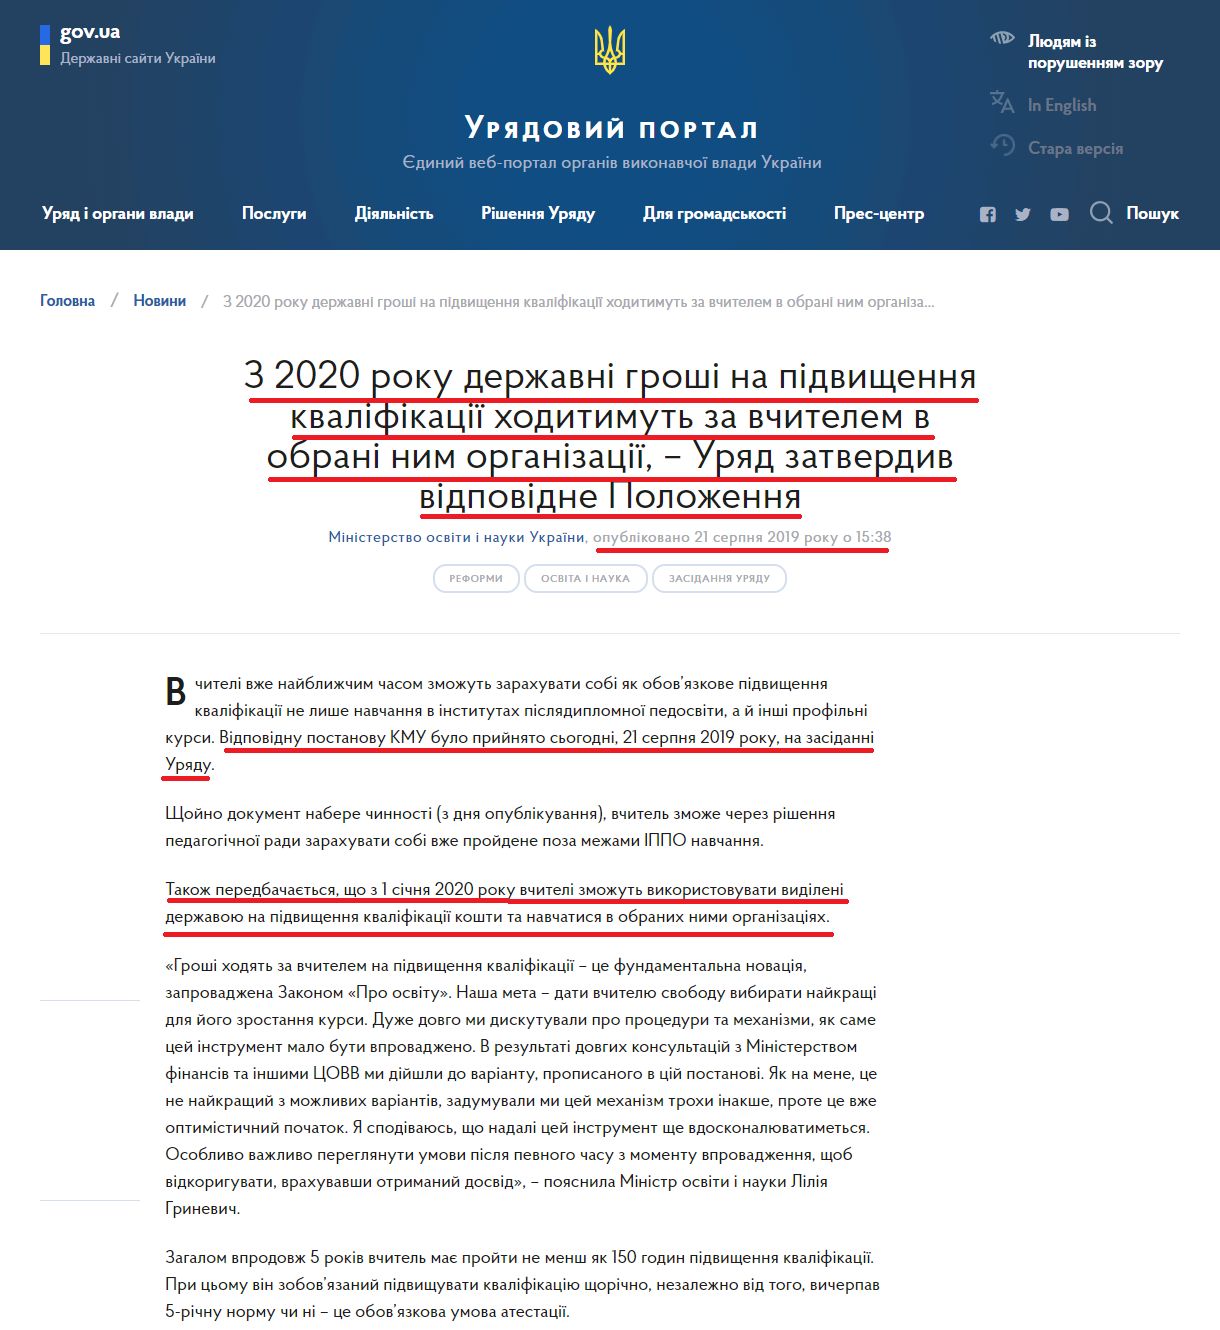 https://www.kmu.gov.ua/ua/news/z-2020-roku-derzhavni-groshi-na-pidvishchennya-kvalifikaciyi-hoditimut-za-vchitelem-v-obrani-nim-organizaciyi-uryad-zatverdiv-vidpovidne-polozhennya